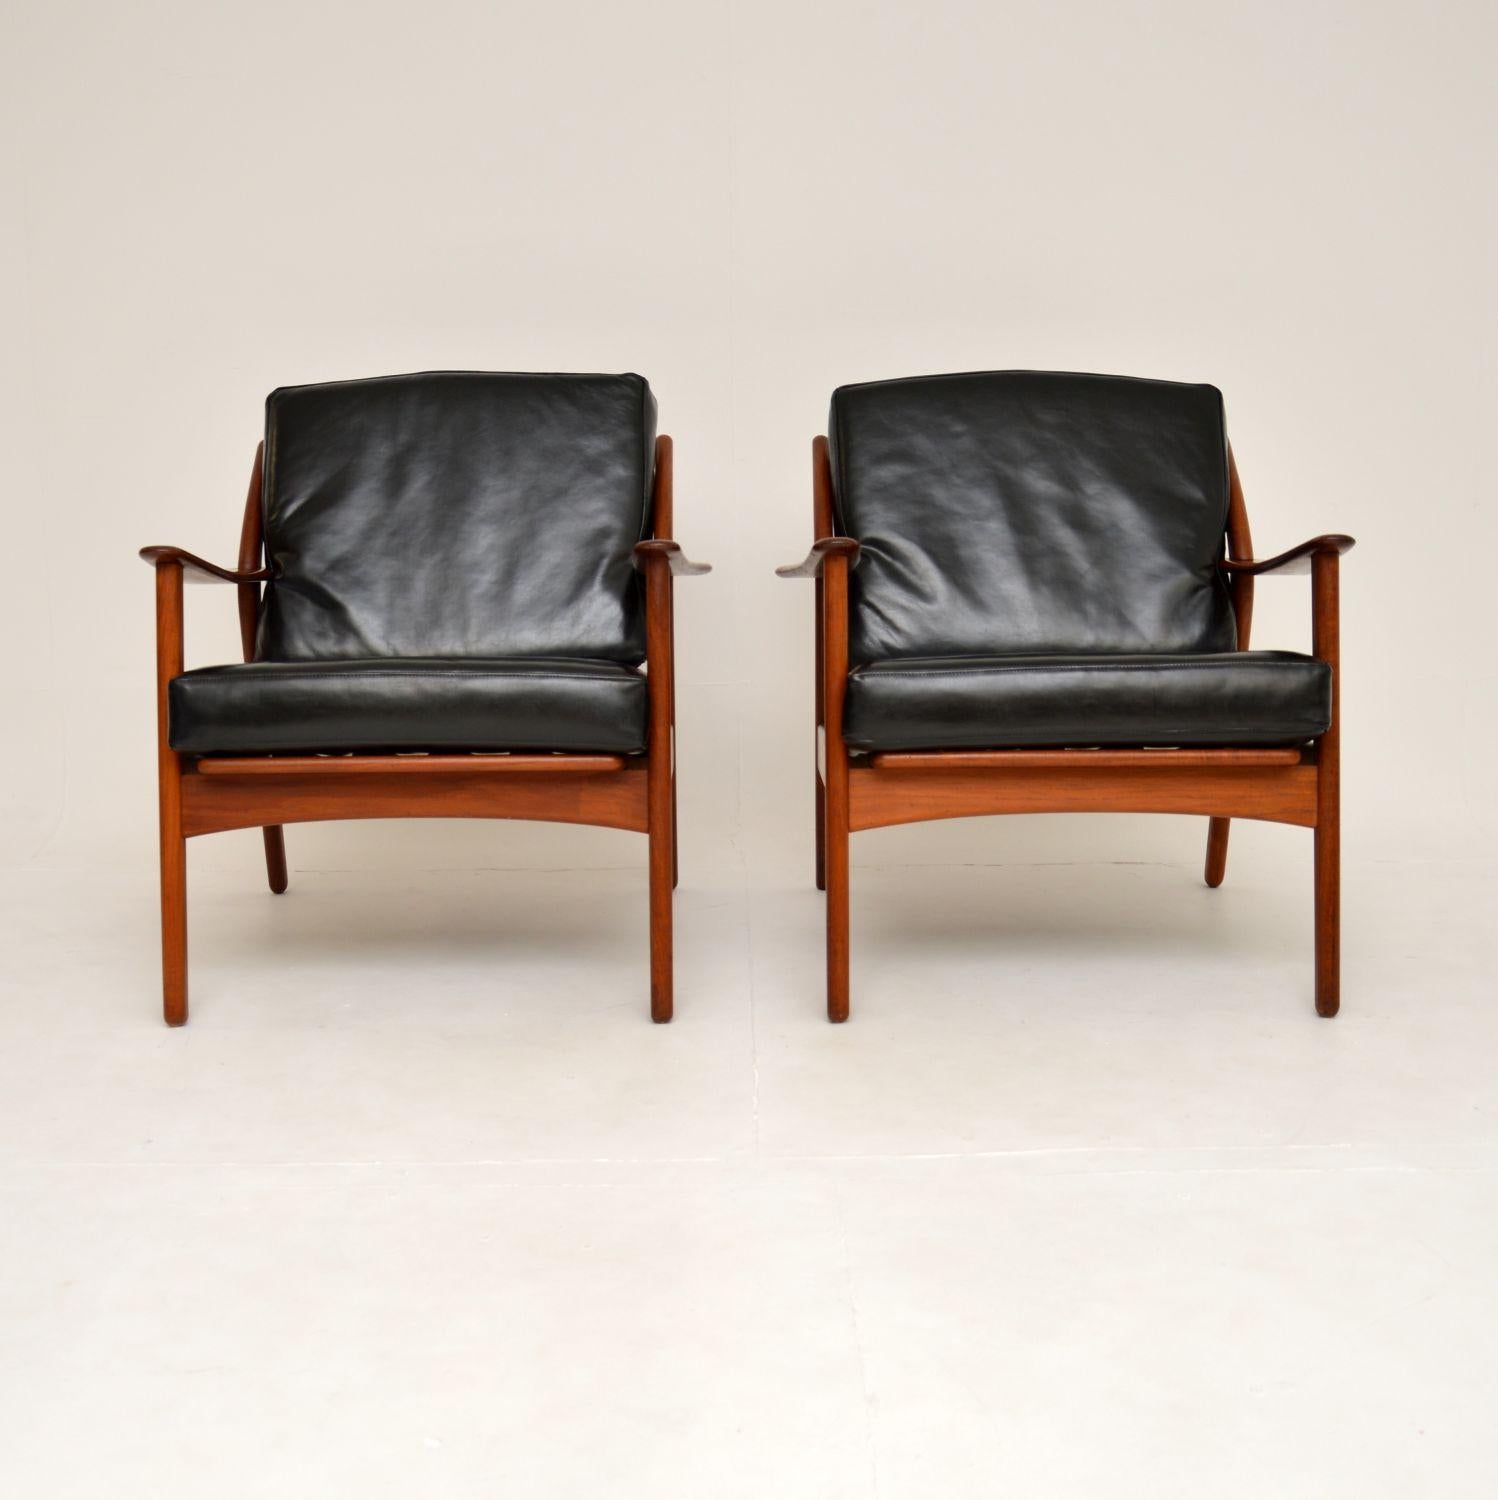 Une paire élégante et extrêmement rare de fauteuils danois vintage des années 1960 par Niels Koefoed en teck massif et en cuir.

La qualité est superbe, ils ont un beau design tout en courbes, avec une construction en teck massif.

L'état est